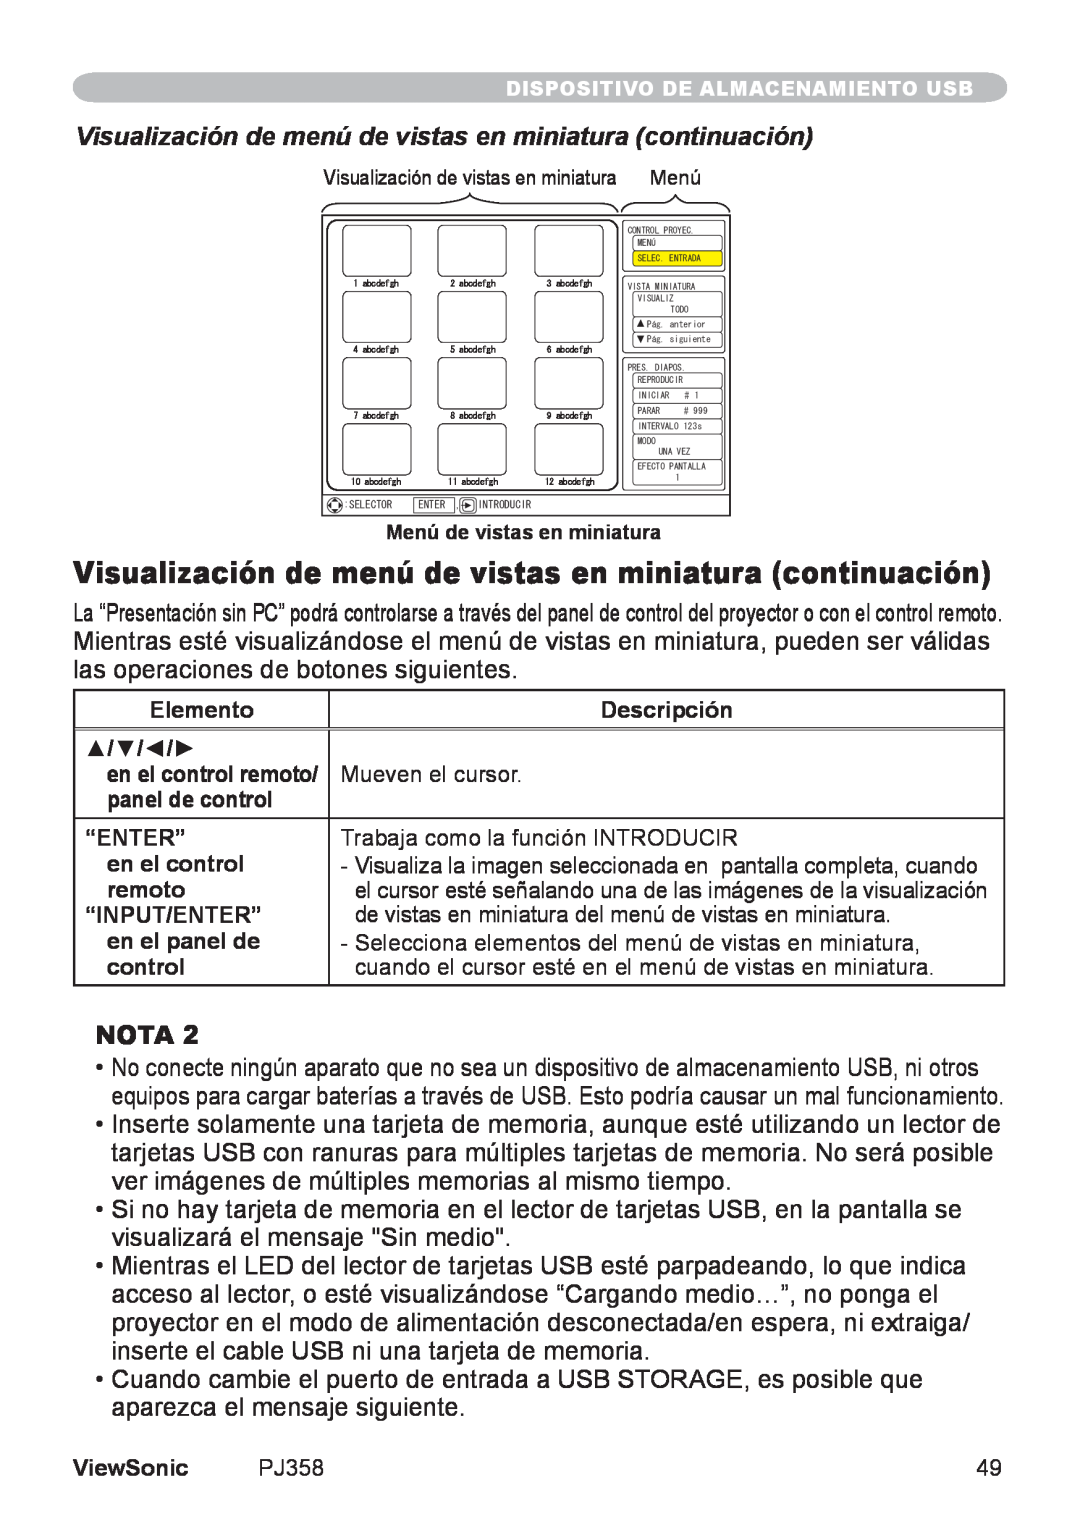 ViewSonic VS11611, PJ358 manual Visualización de menú de vistas en miniatura continuación, Nota 